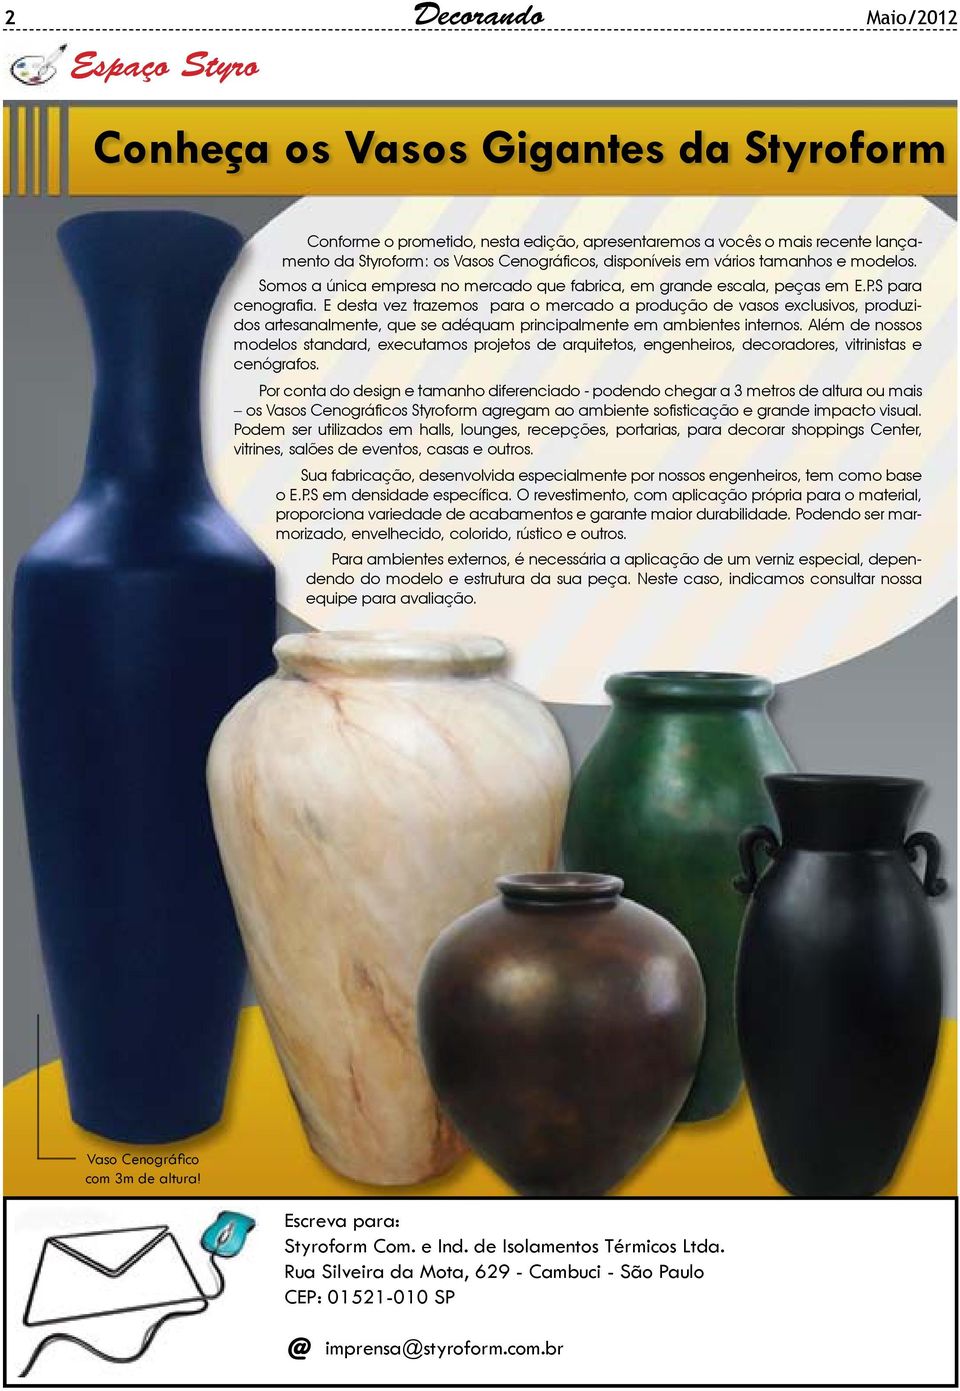 E desta vez trazemos para o mercado a produção de vasos exclusivos, produzidos artesanalmente, que se adéquam principalmente em ambientes internos.